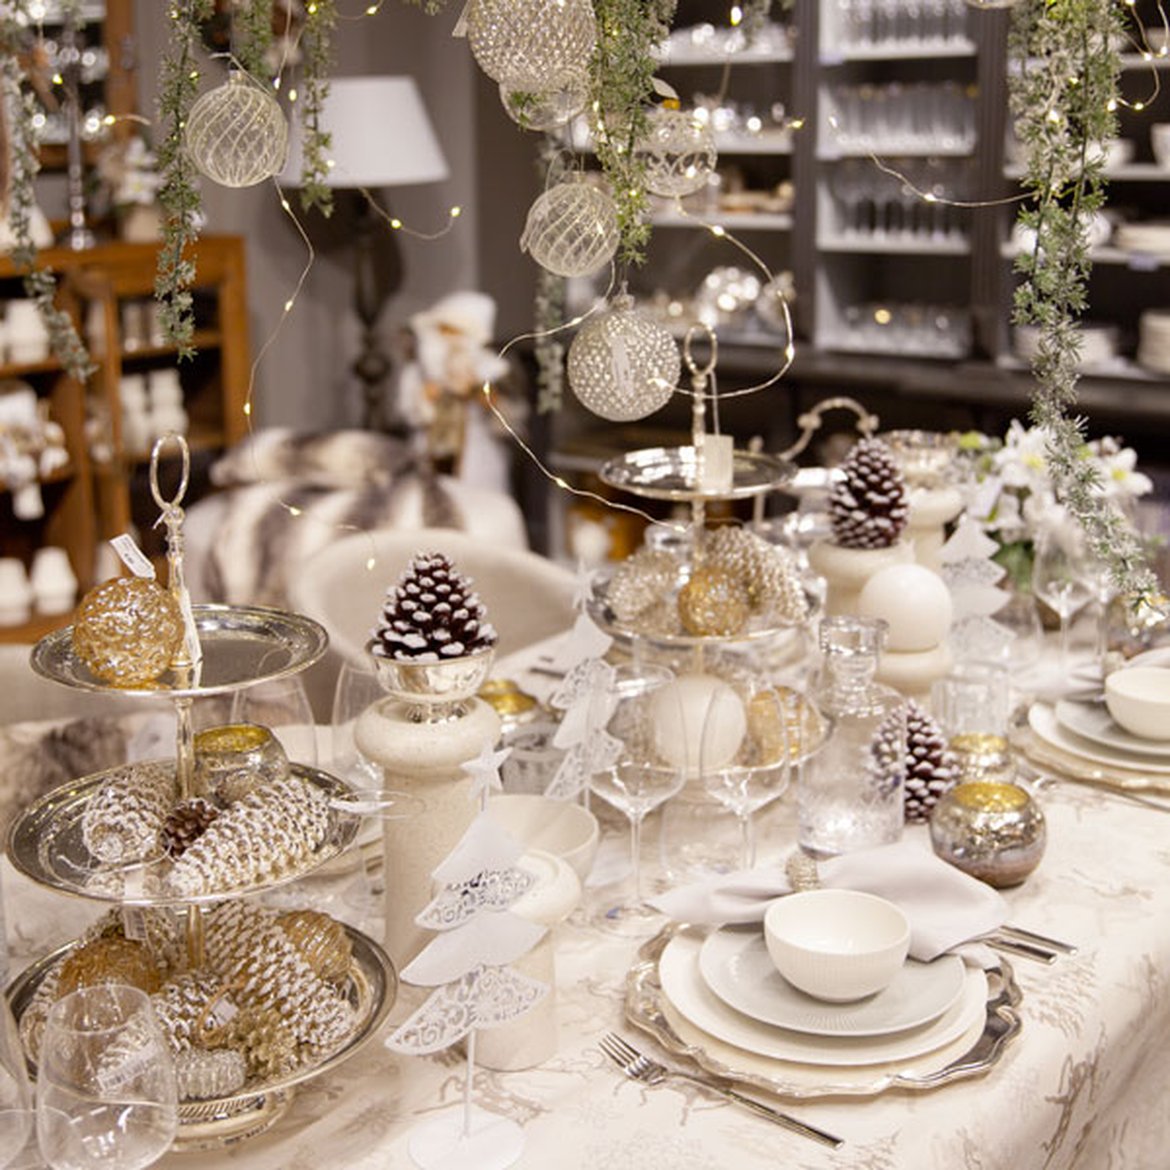 Table de Noël - Blanc, doré et argenté - Argenterie et lustre